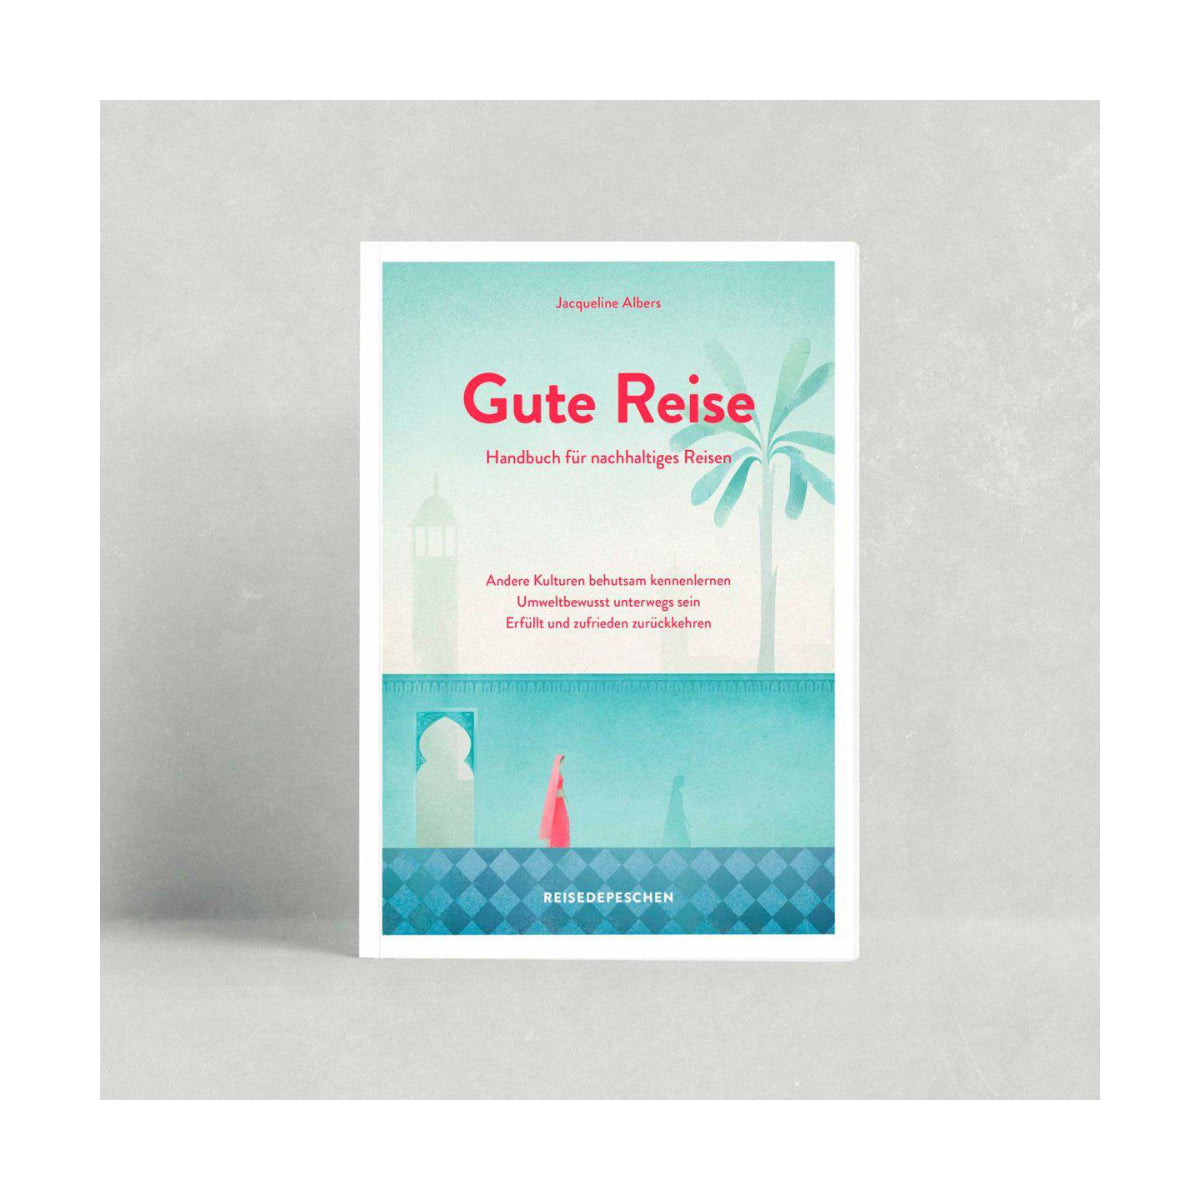 Reisedepeschen – Handbuch GUTE REISE für nachhaltiges Reisen von Jacqueline Albers - WILDHOOD store